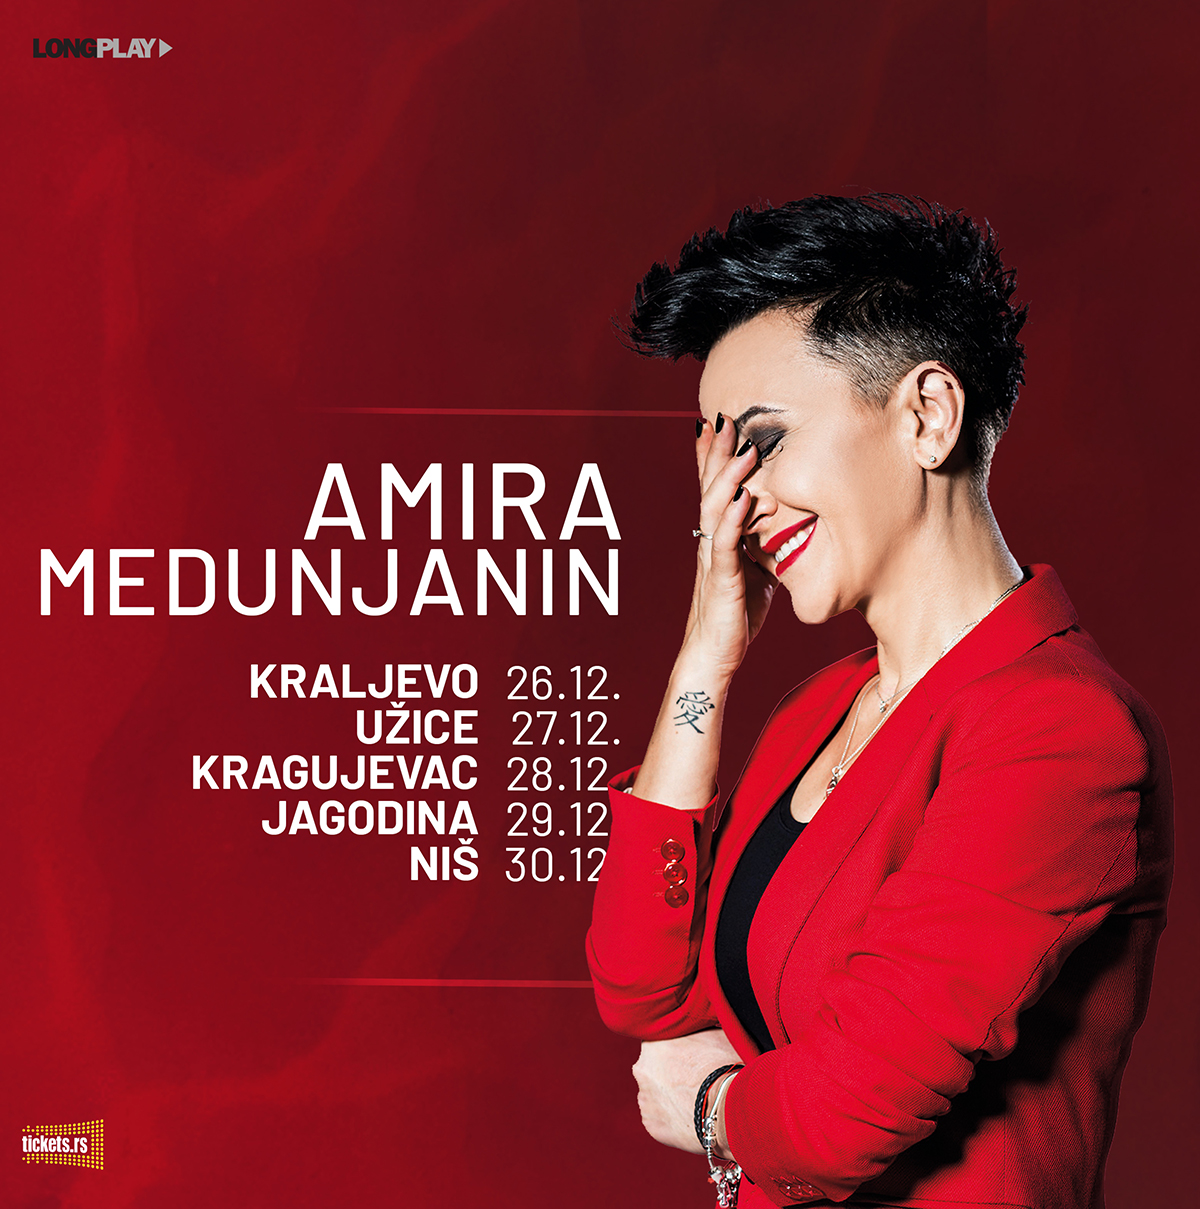 Amira Medunjanin